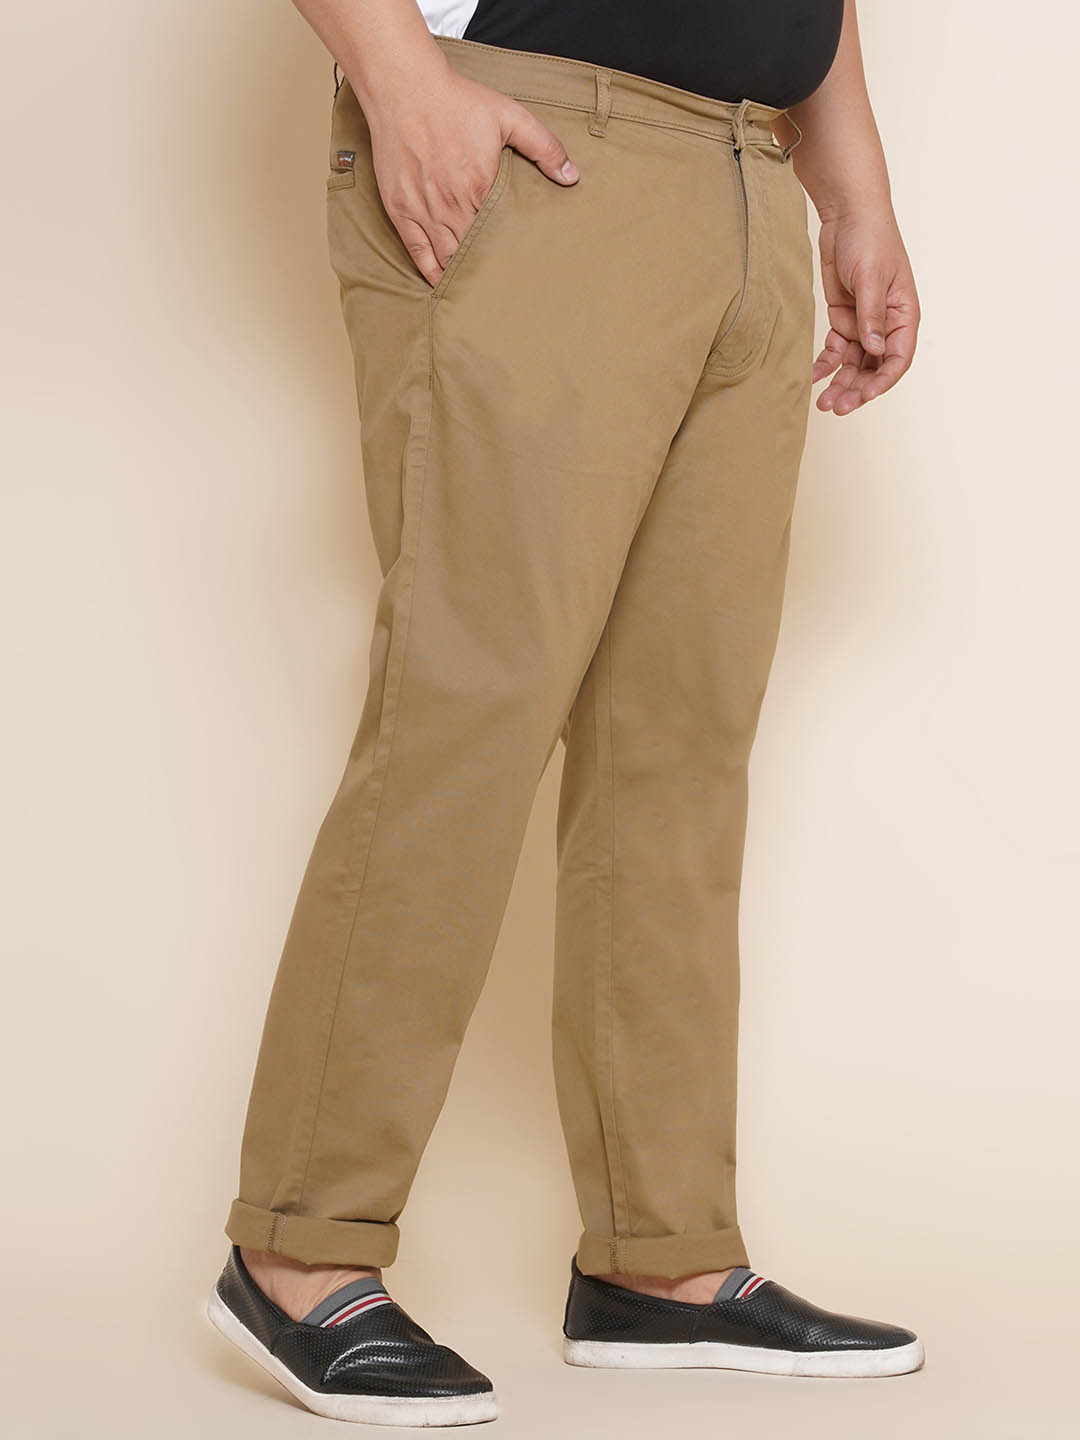 bottomwear/trousers/JPTR21012/jptr21012-4.jpg